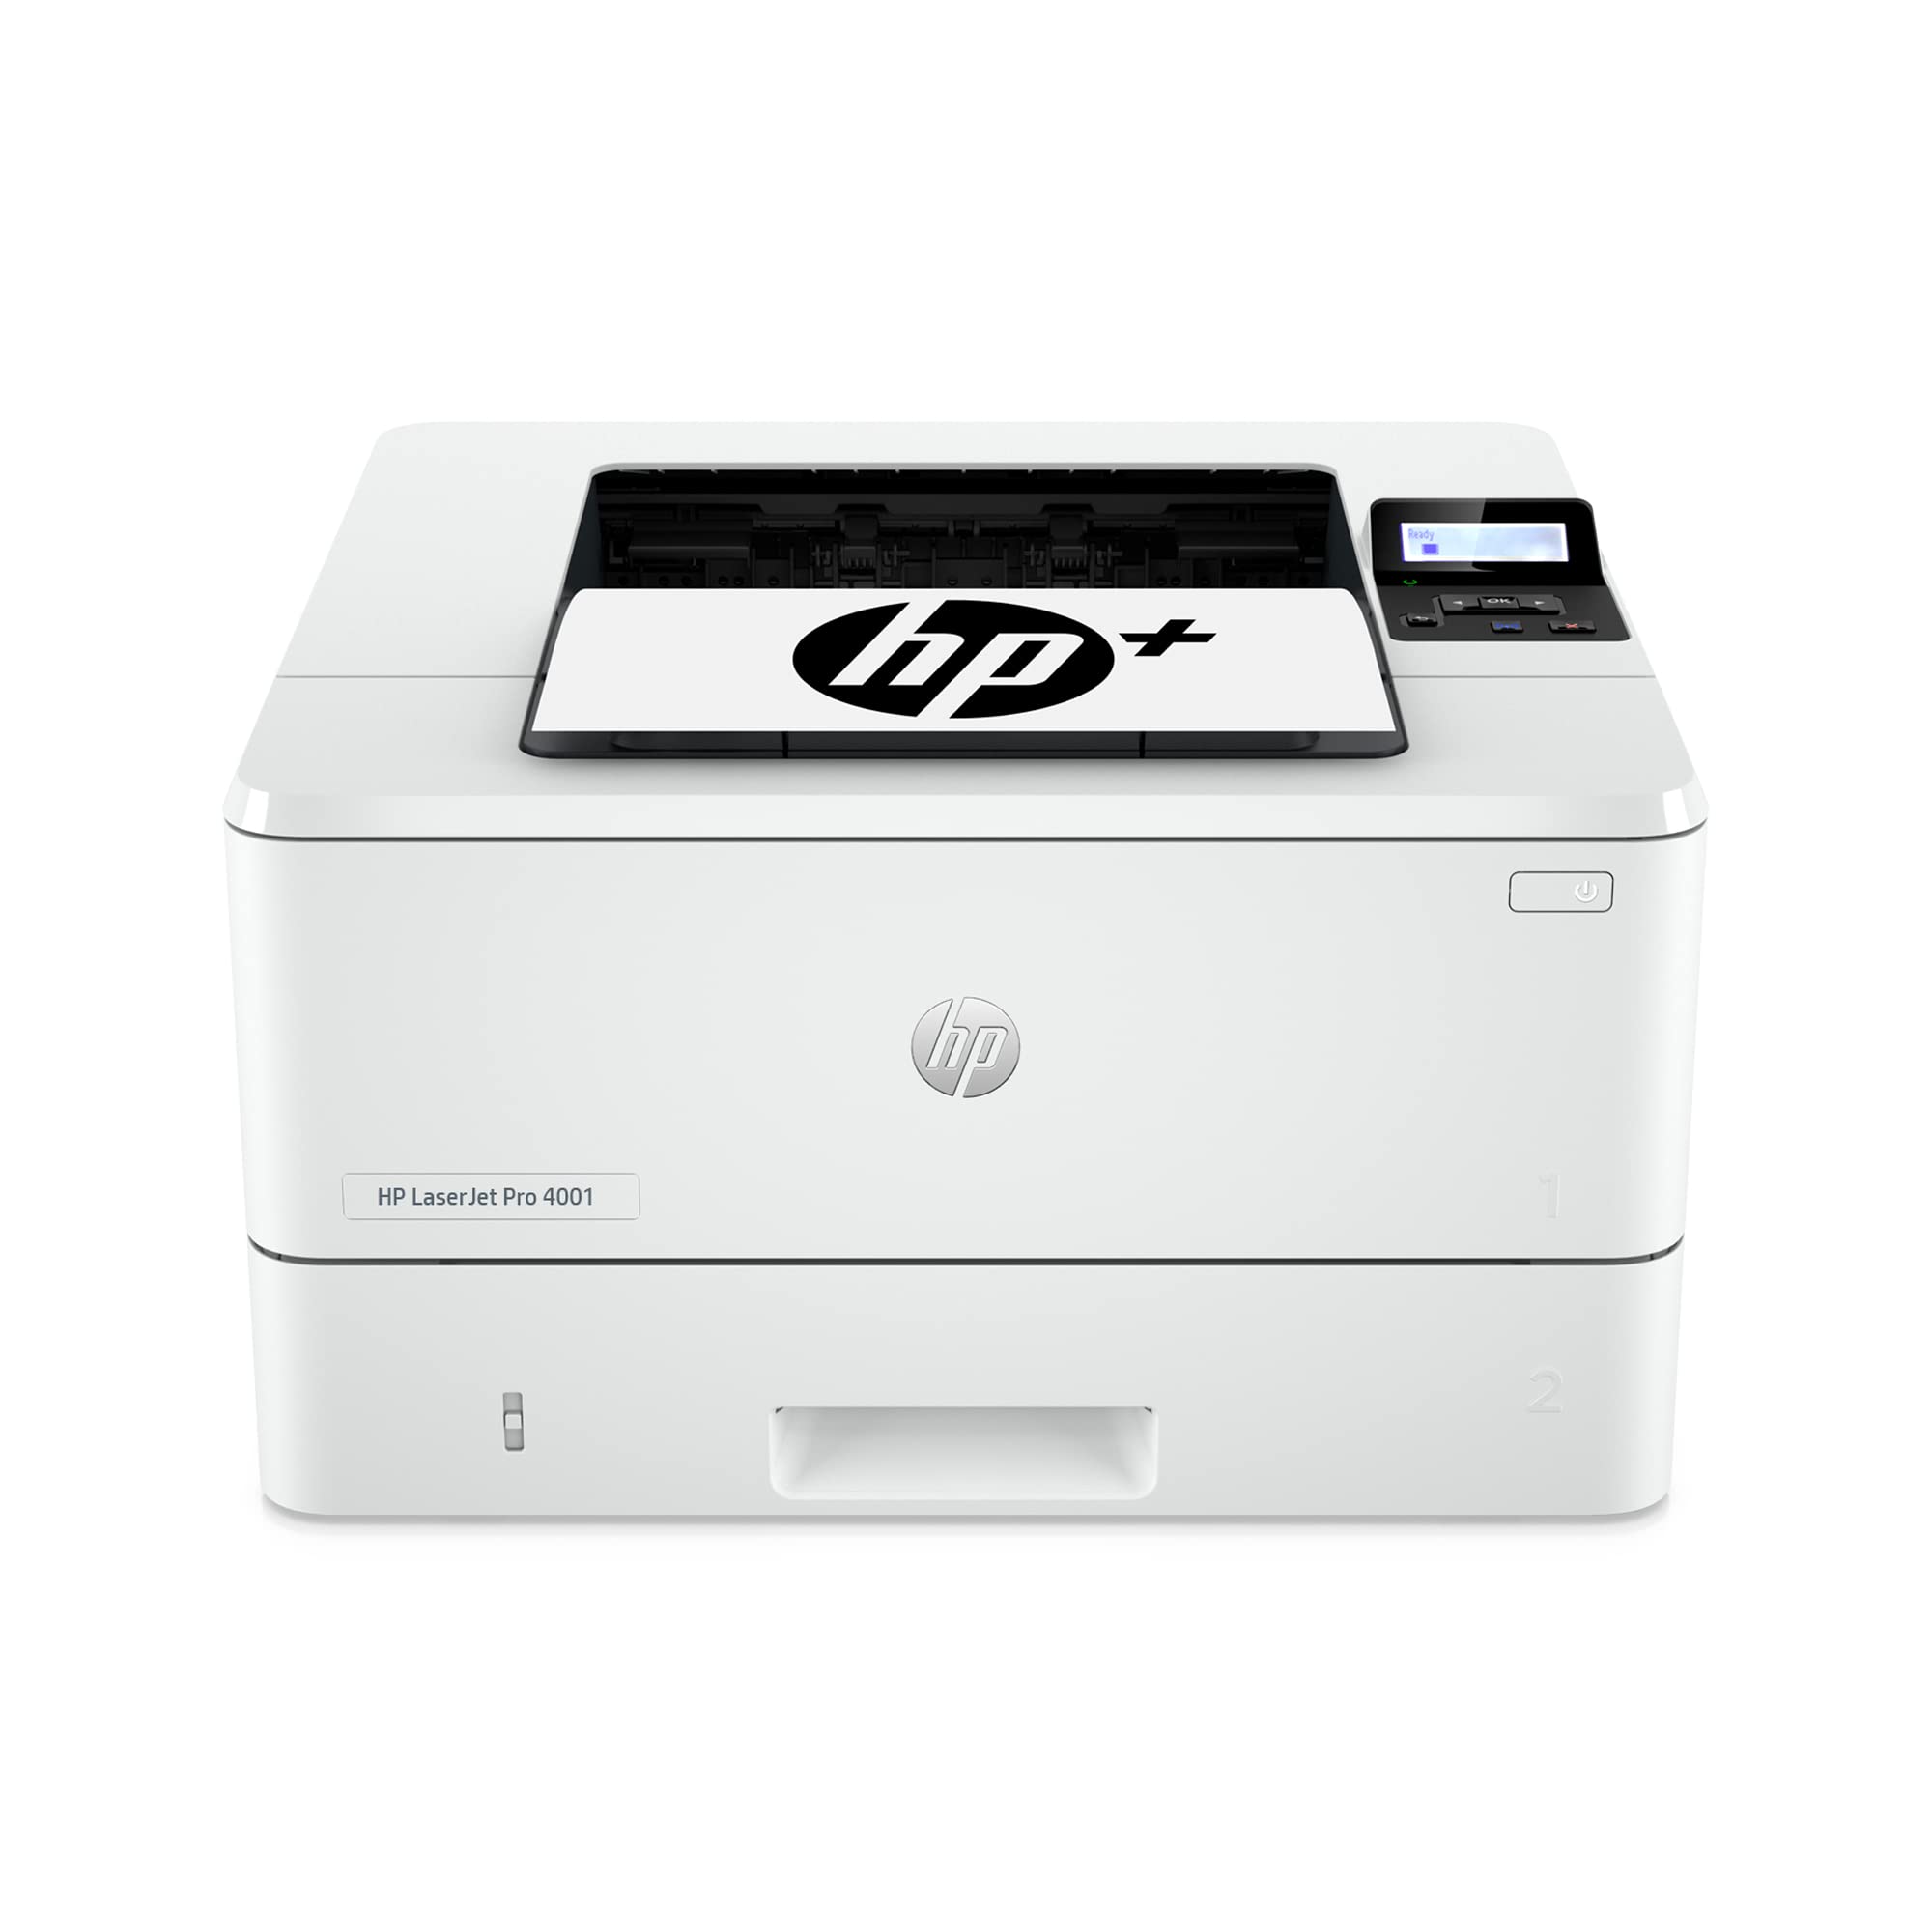  HP लेजरजेट प्रो 4001dwe वायरलेस ब्लैक एंड व्हाइट प्रिंटर + स्मार्ट ऑफिस सुविधाओं...